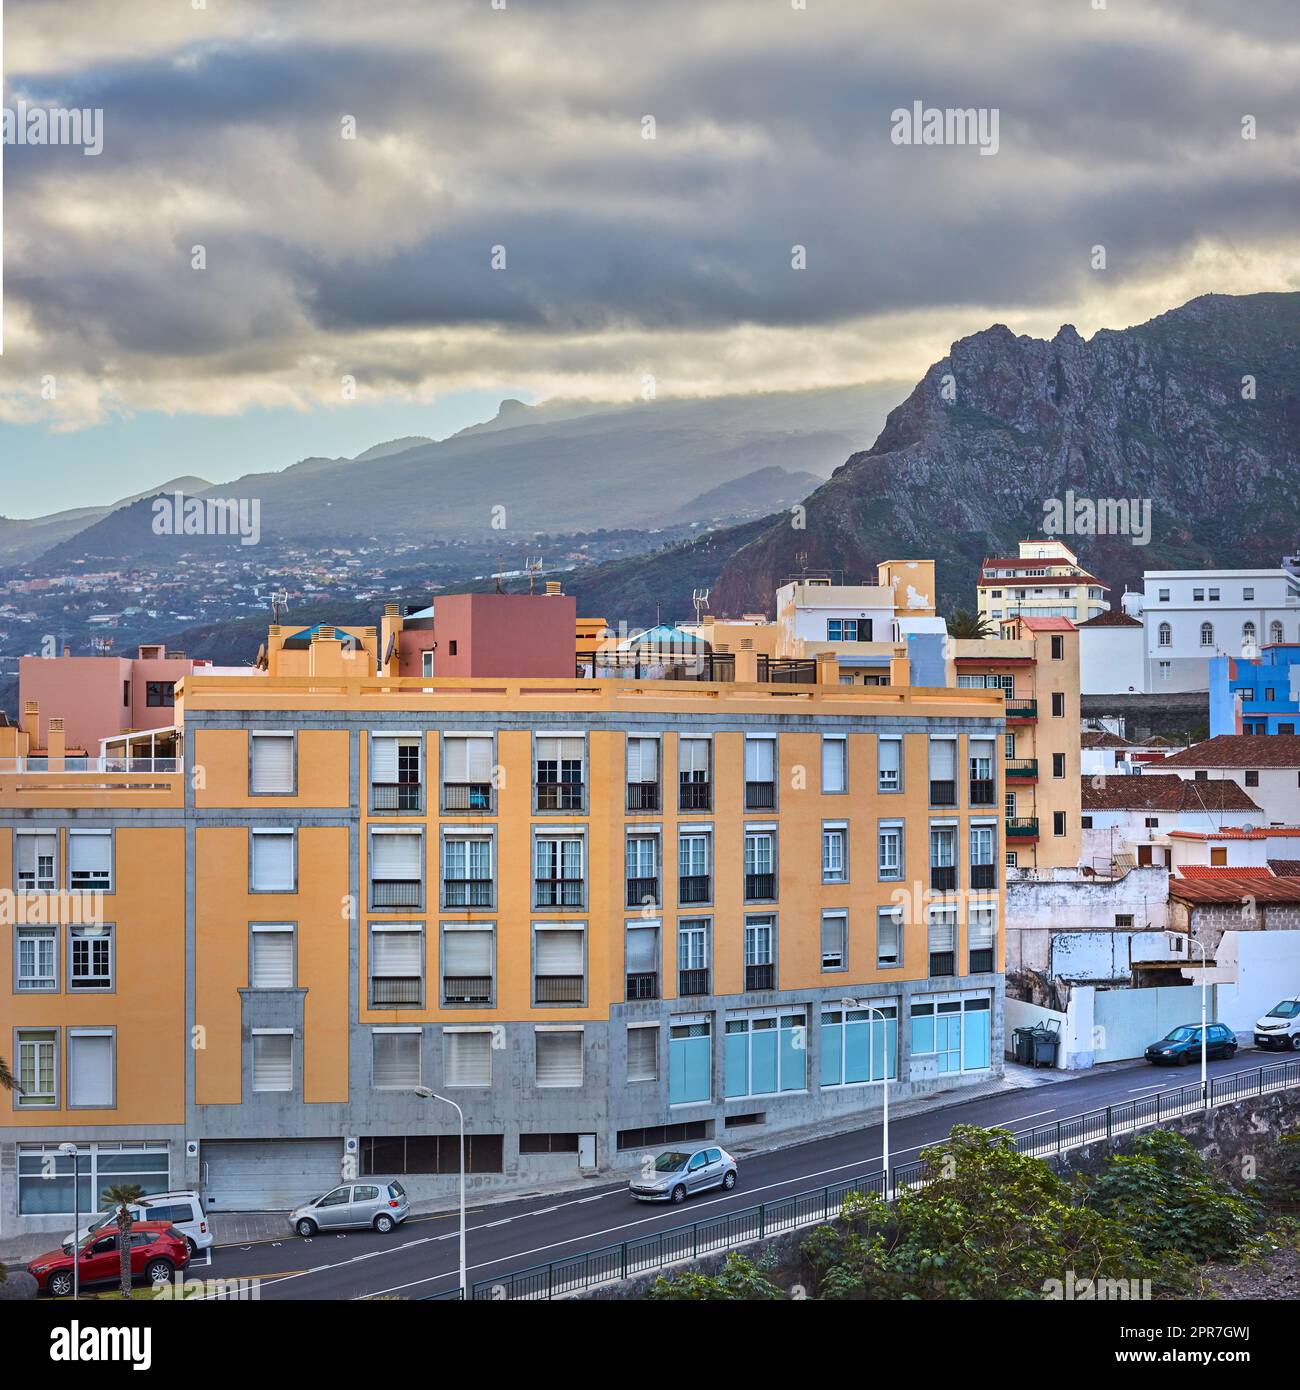 Vue panoramique sur les maisons vibrantes, les bâtiments résidentiels traditionnels ou les structures de la ville. Destination touristique rue sur la route de Santa Cruz, la Palma, Espagne avec montagnes d'arrière-plan et ciel nuageux Banque D'Images